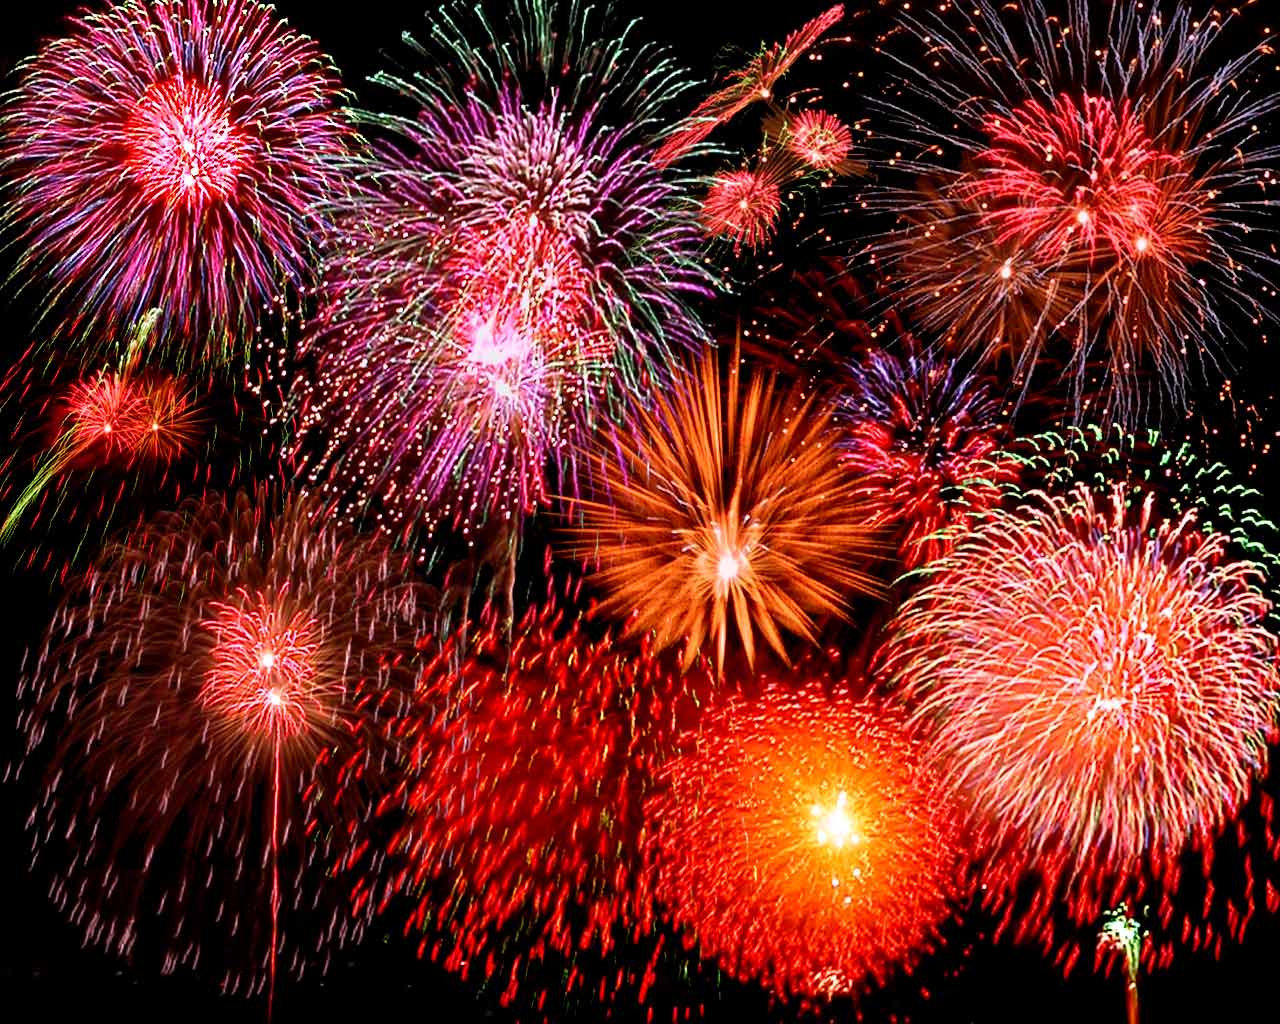 http://1.bp.blogspot.com/-4-4ia69sgbE/TVoyhZihcJI/AAAAAAAAAao/7EC67Sp9xRM/s1600/fireworks.jpg